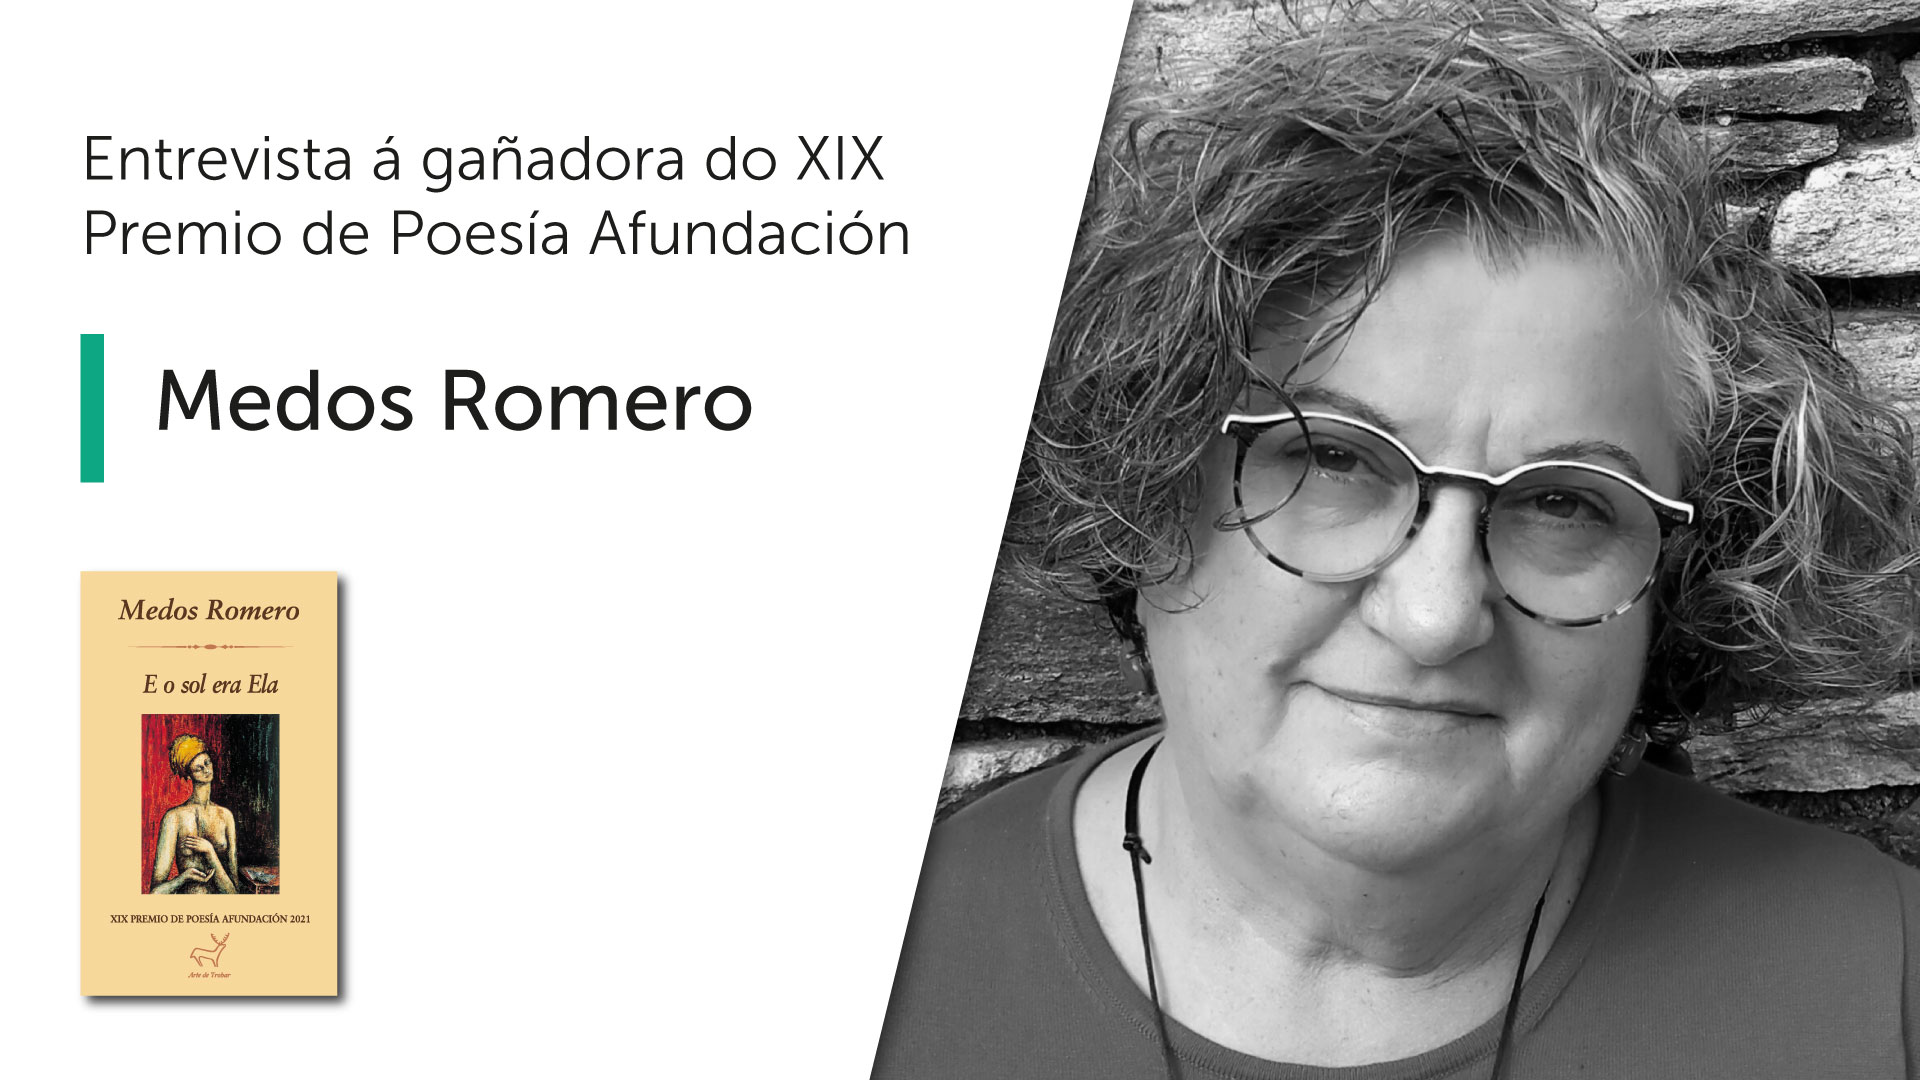 Entrevista a Medos Romero, gañadora do XIX Premio de Poesía Afundación e do Premio de la Crítica Literaria